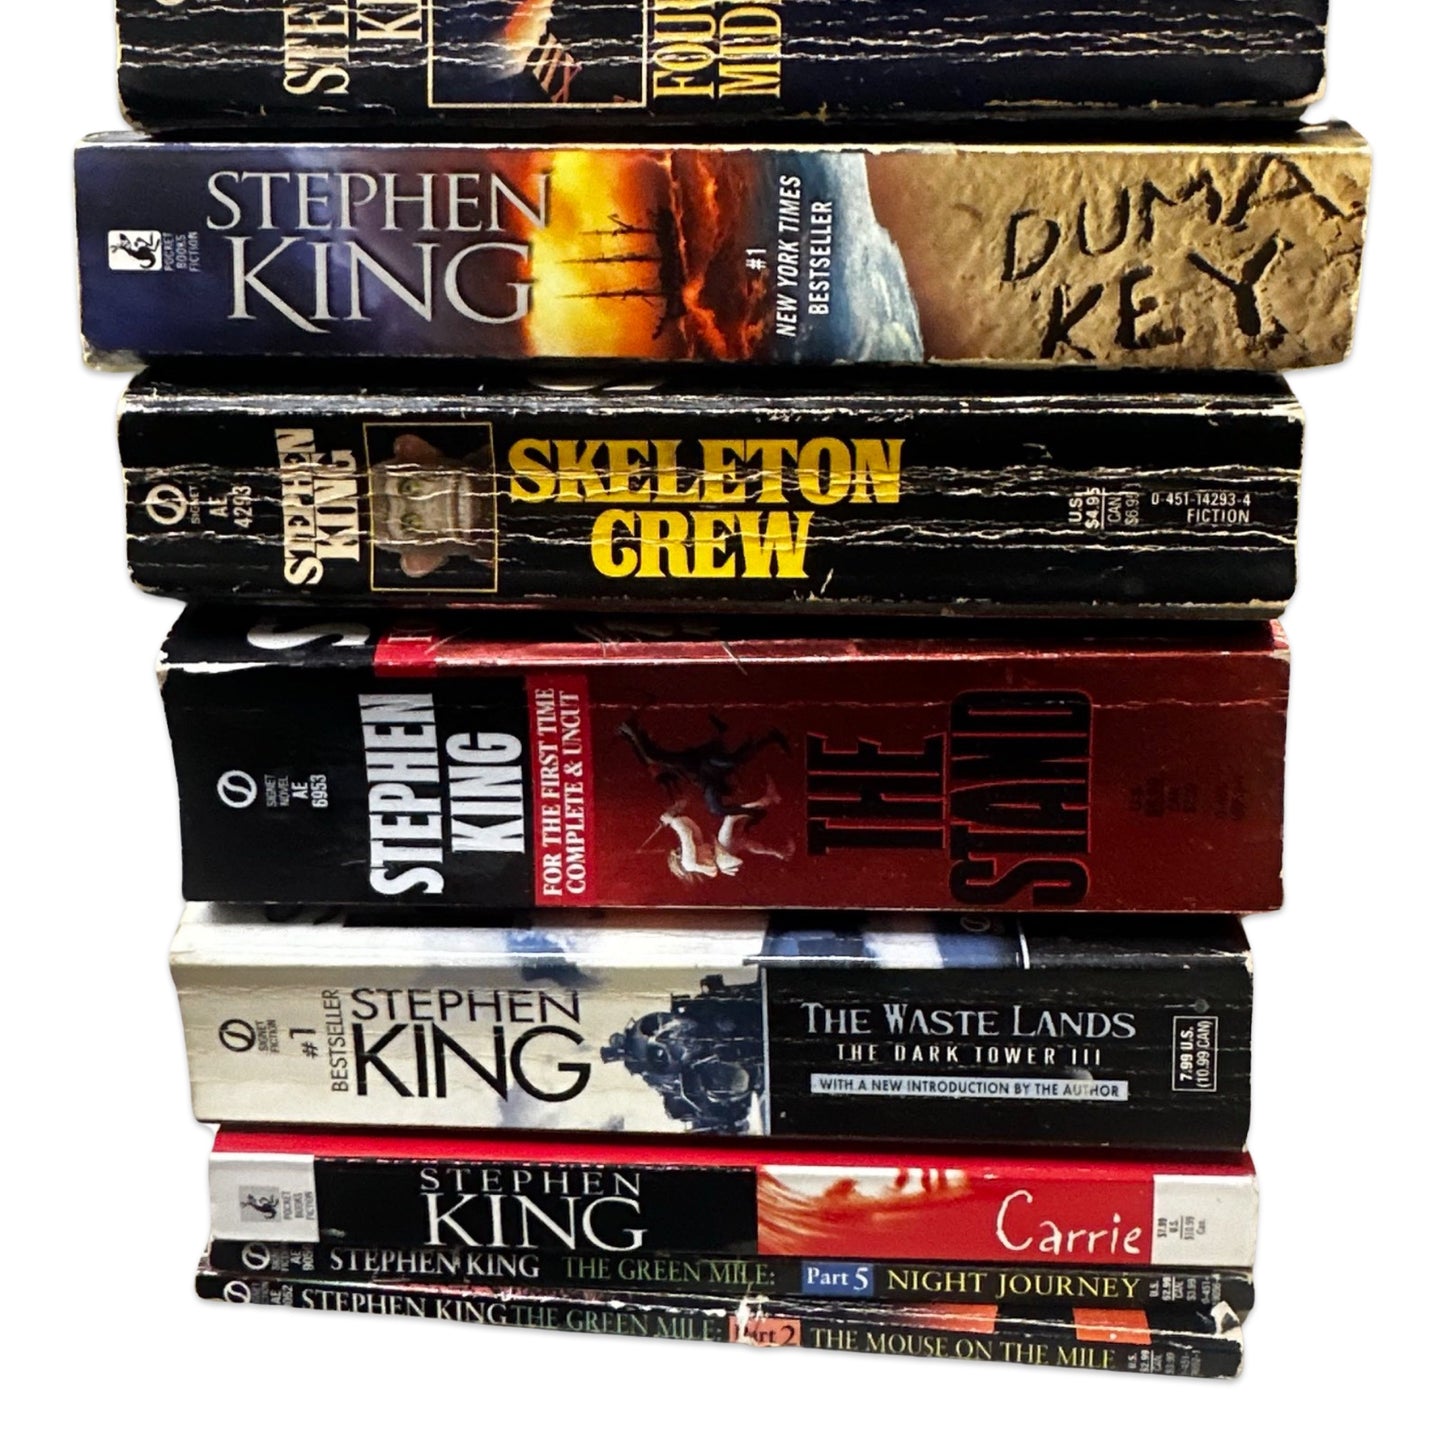 Stephen King books - Mass Market Paperbacks